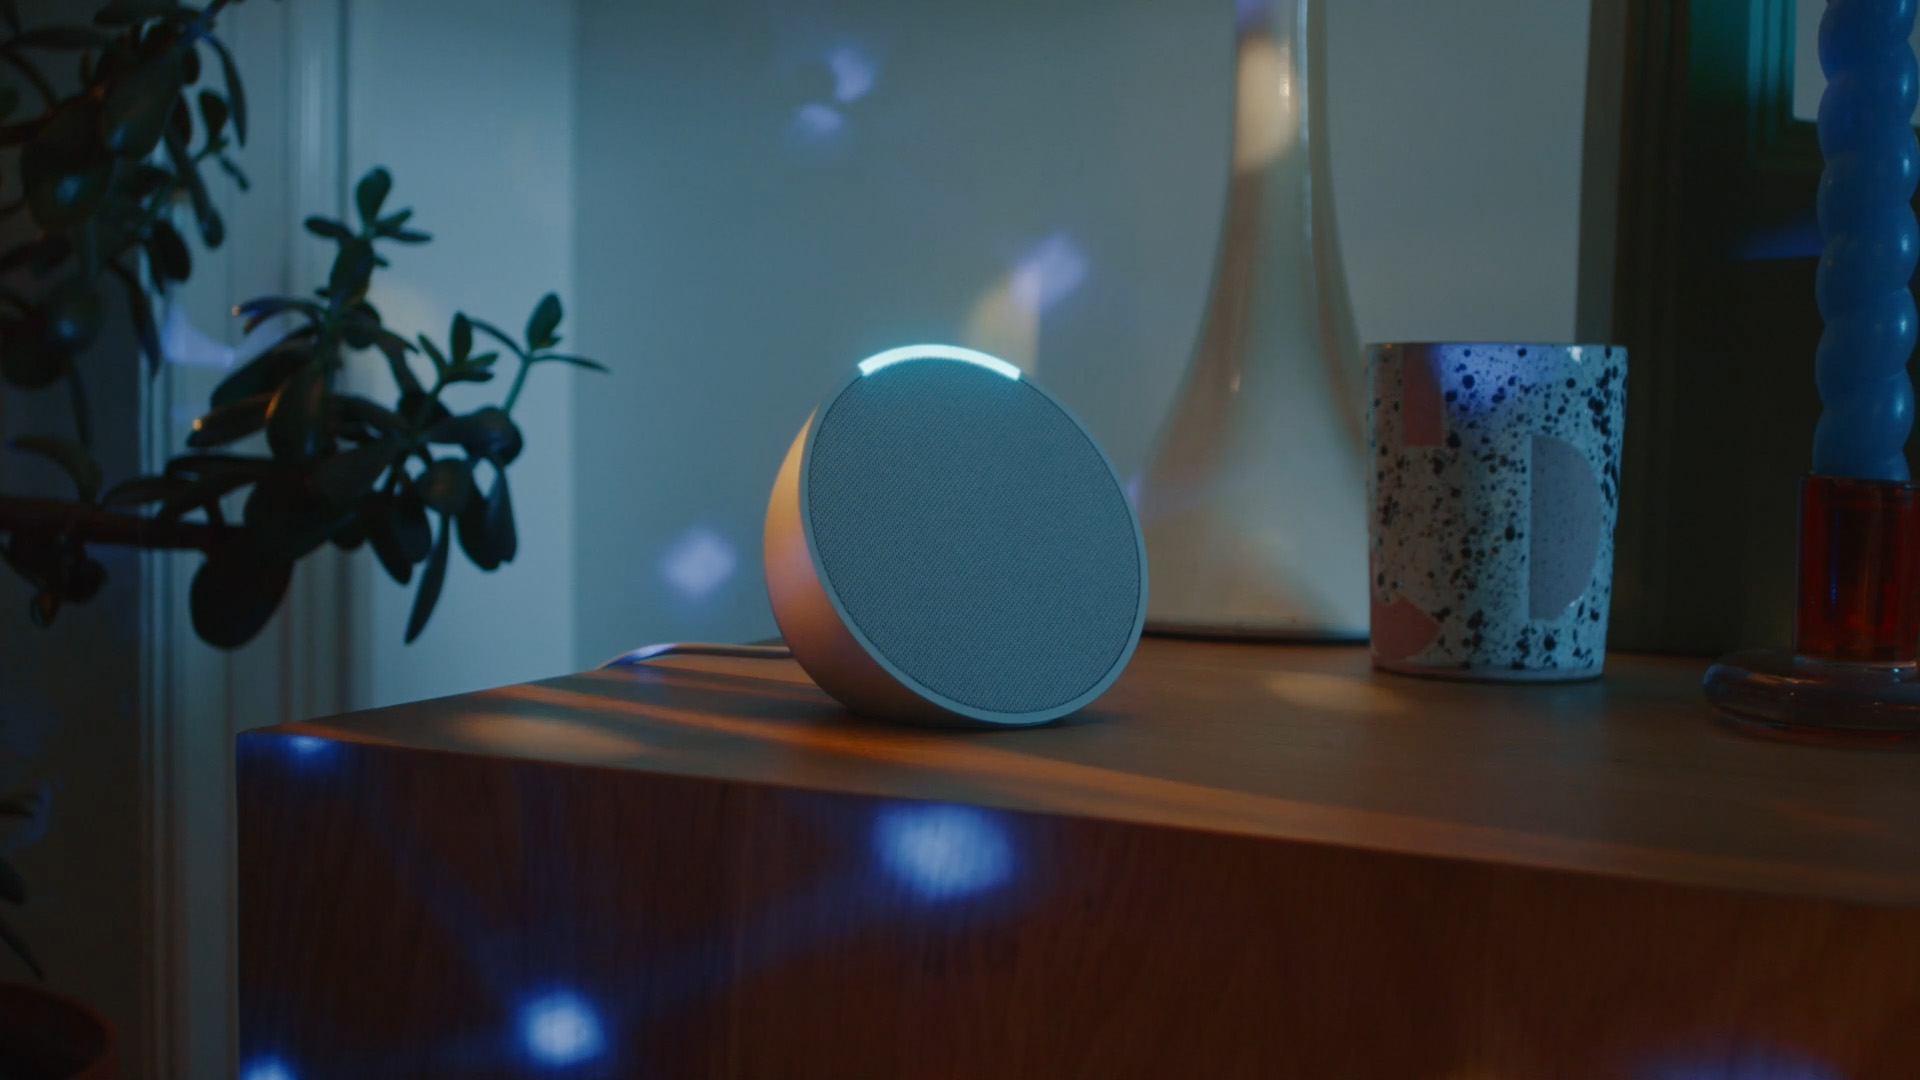 Oferta Imperdible Amazon Echo Pop con Alexa a Solo 20,99€ - ¡Ahorra 62%!